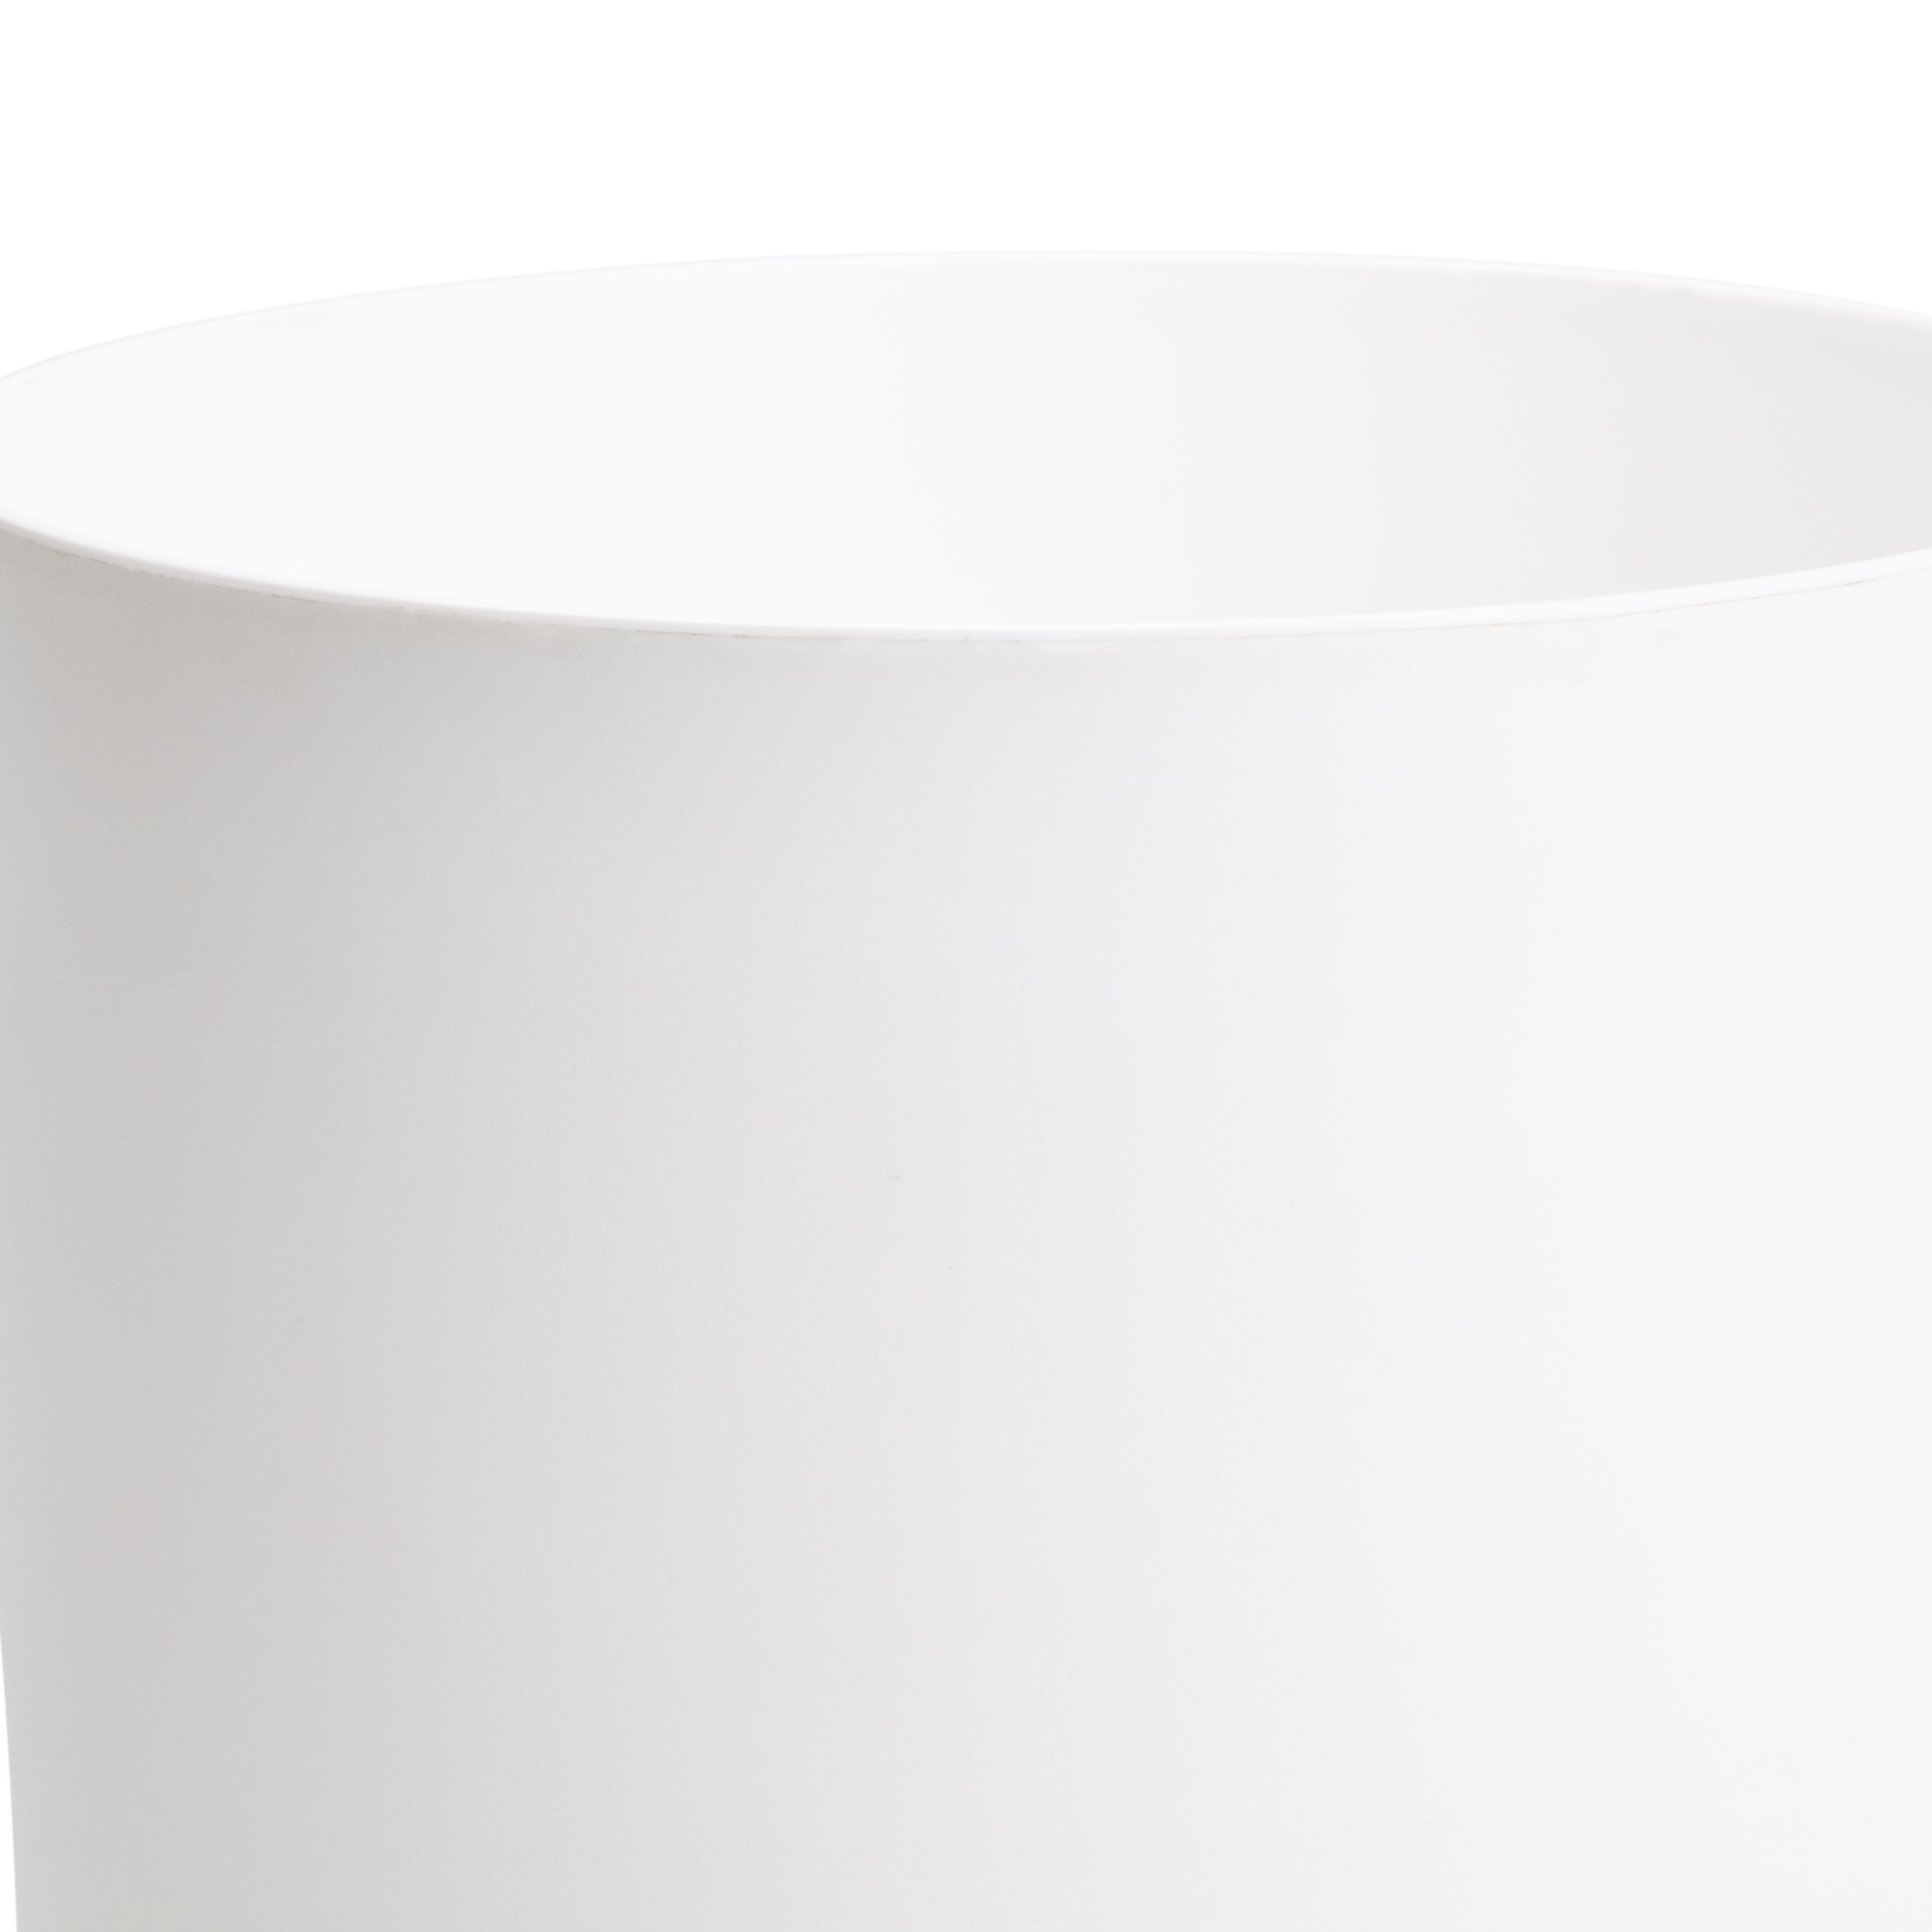 White Plastic Circular Plant pot (Dia)20.7cm